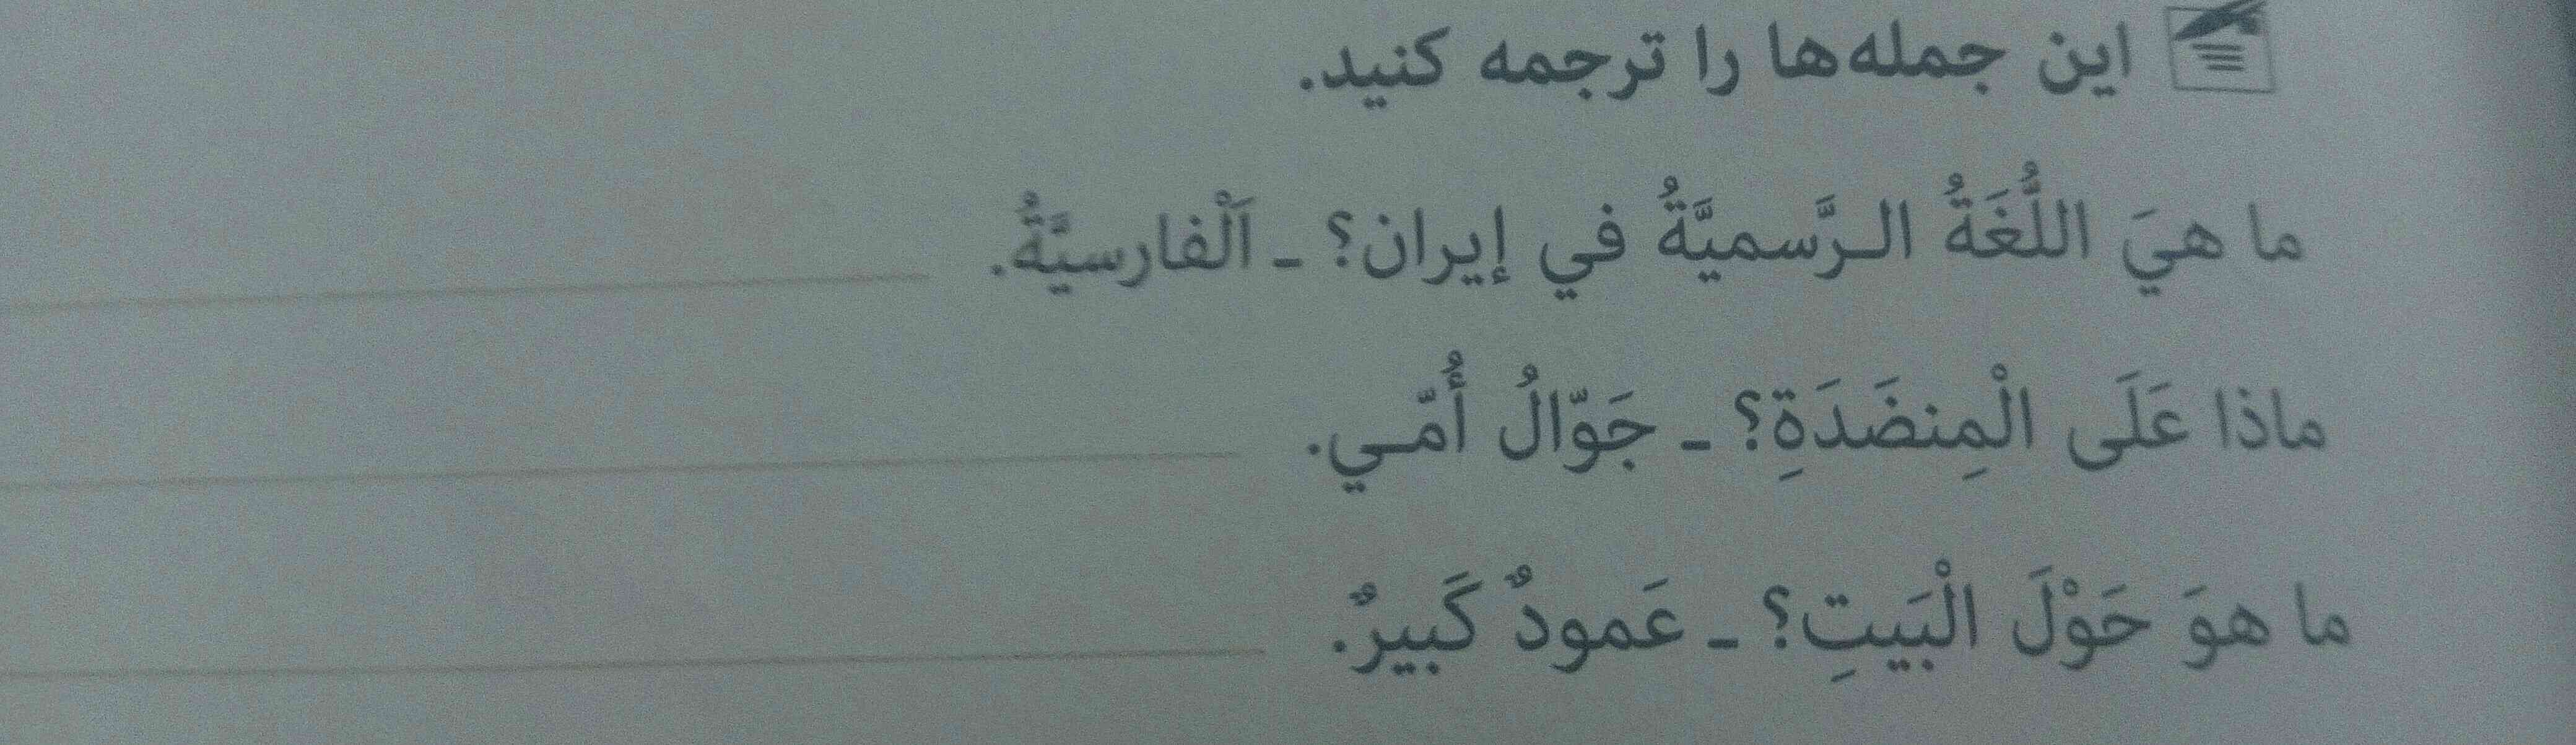 معنی لغات عربی را ترجمه کنید 

باتشکر اگه امتیاز میخای بیا ترجمه کنید